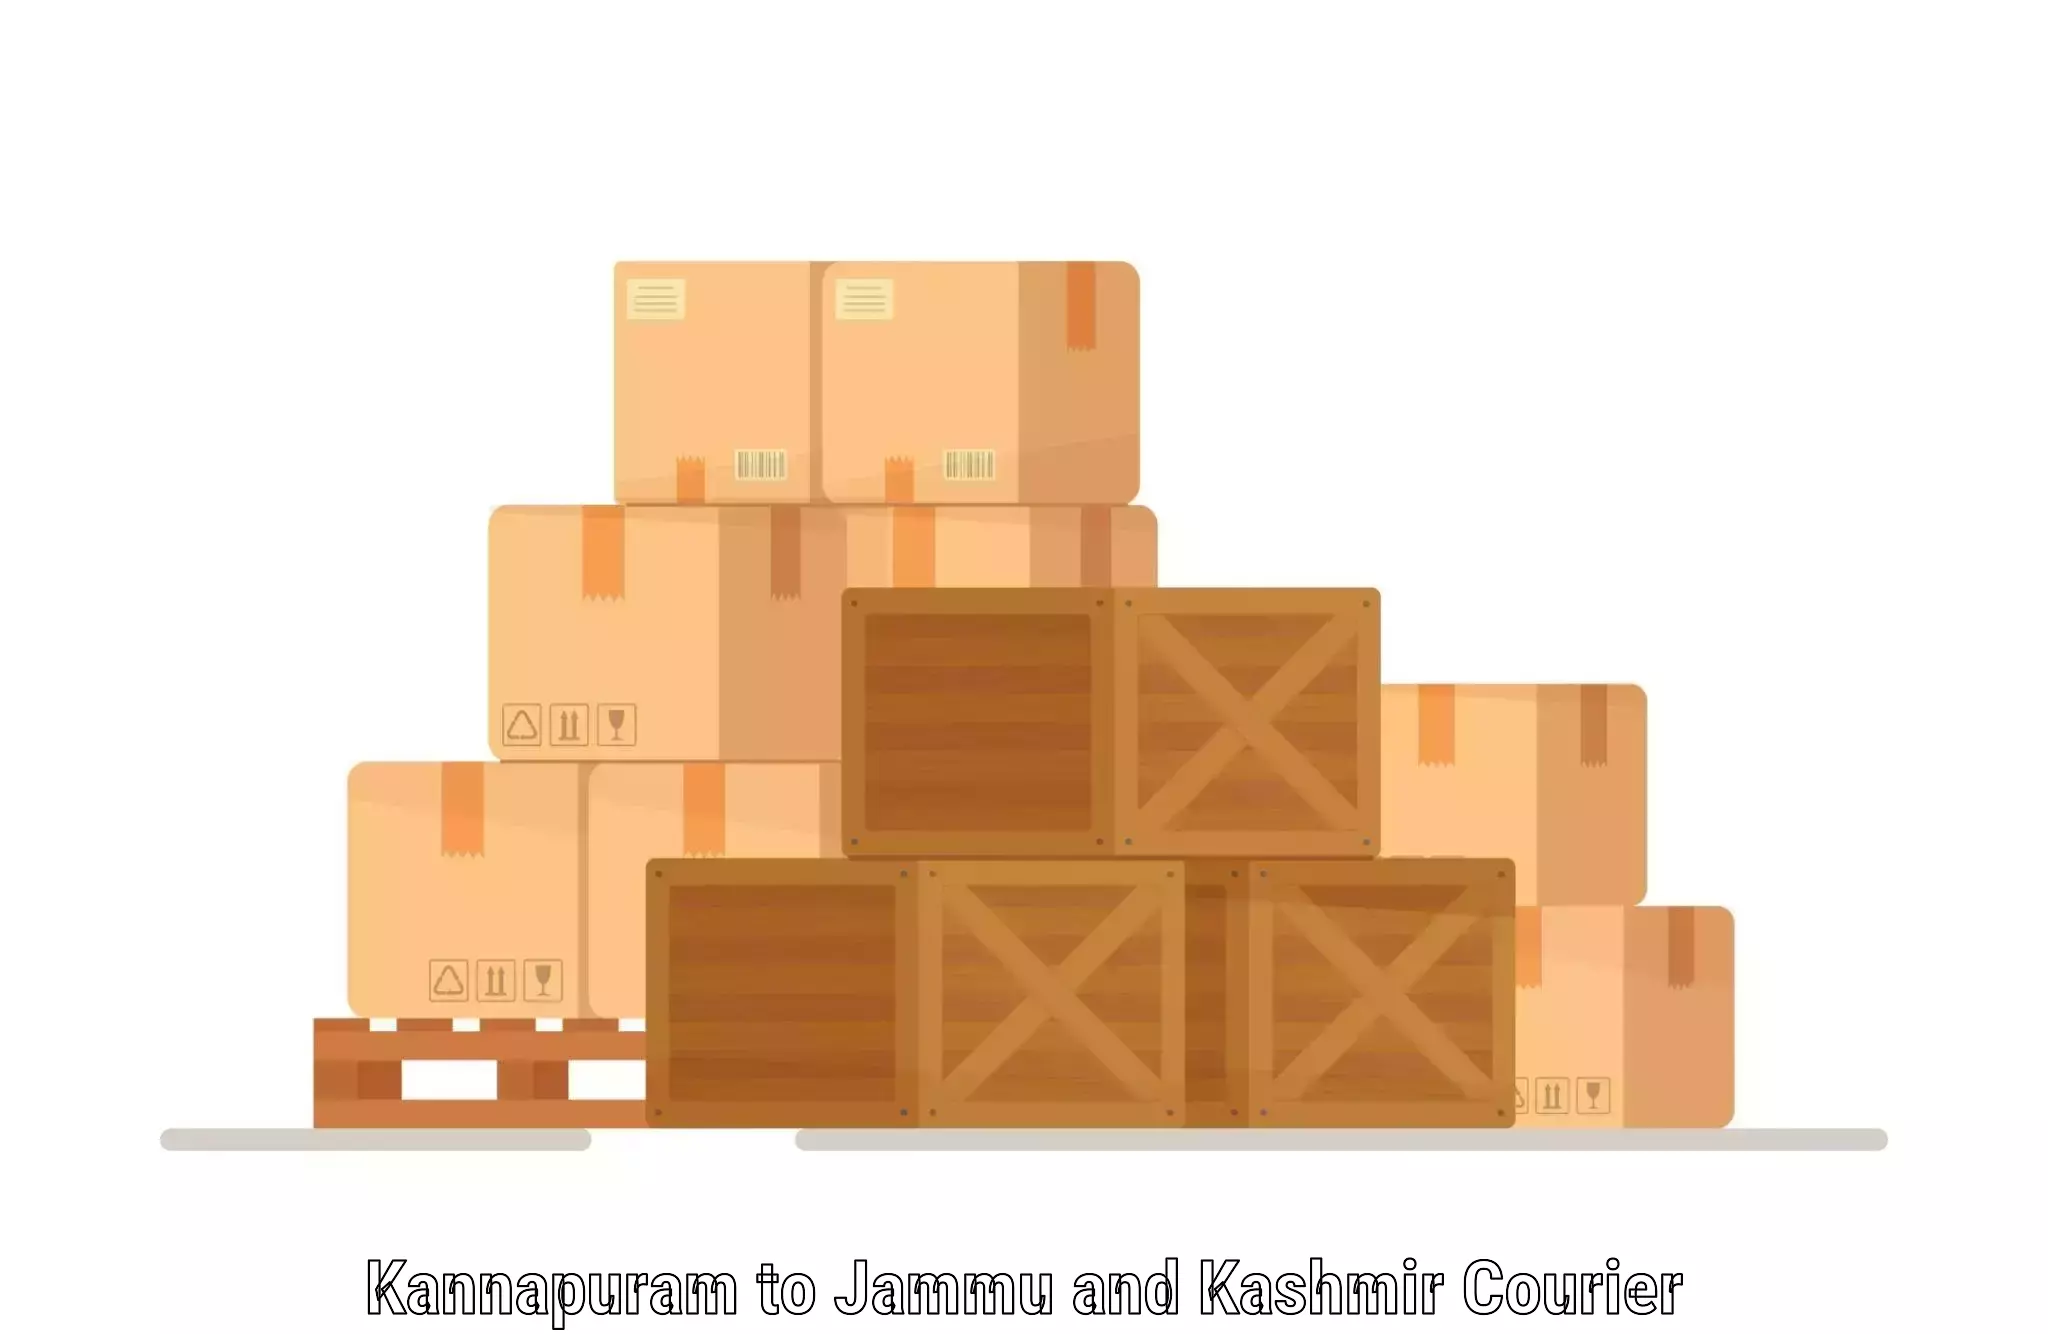 Personalized courier experiences Kannapuram to Jammu